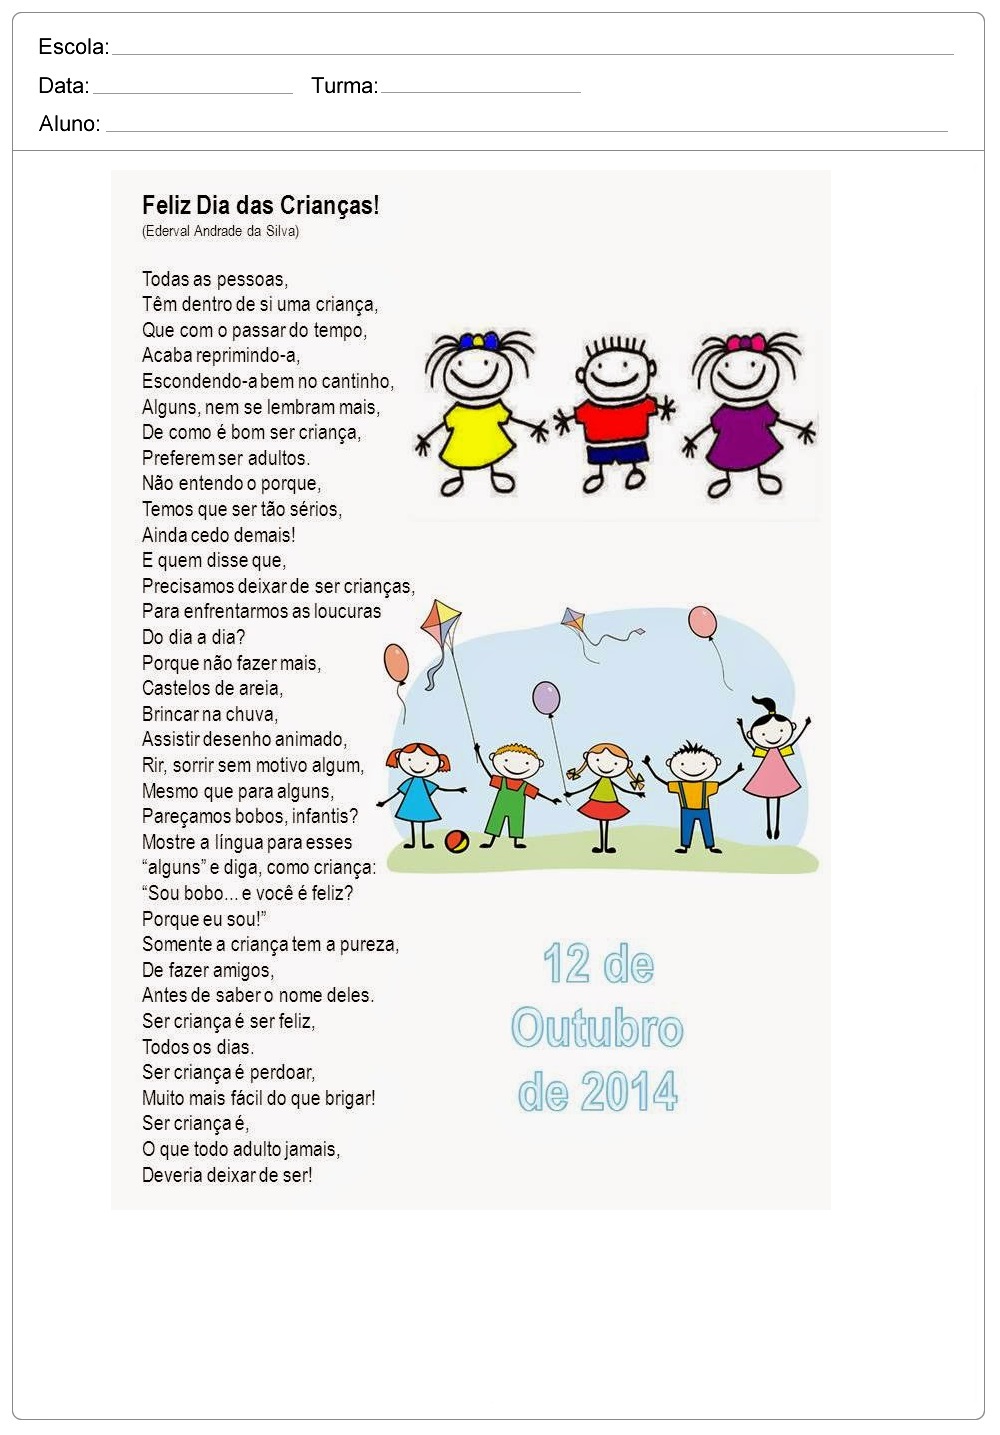 Poemas e Poesias para o Dia das Crianças